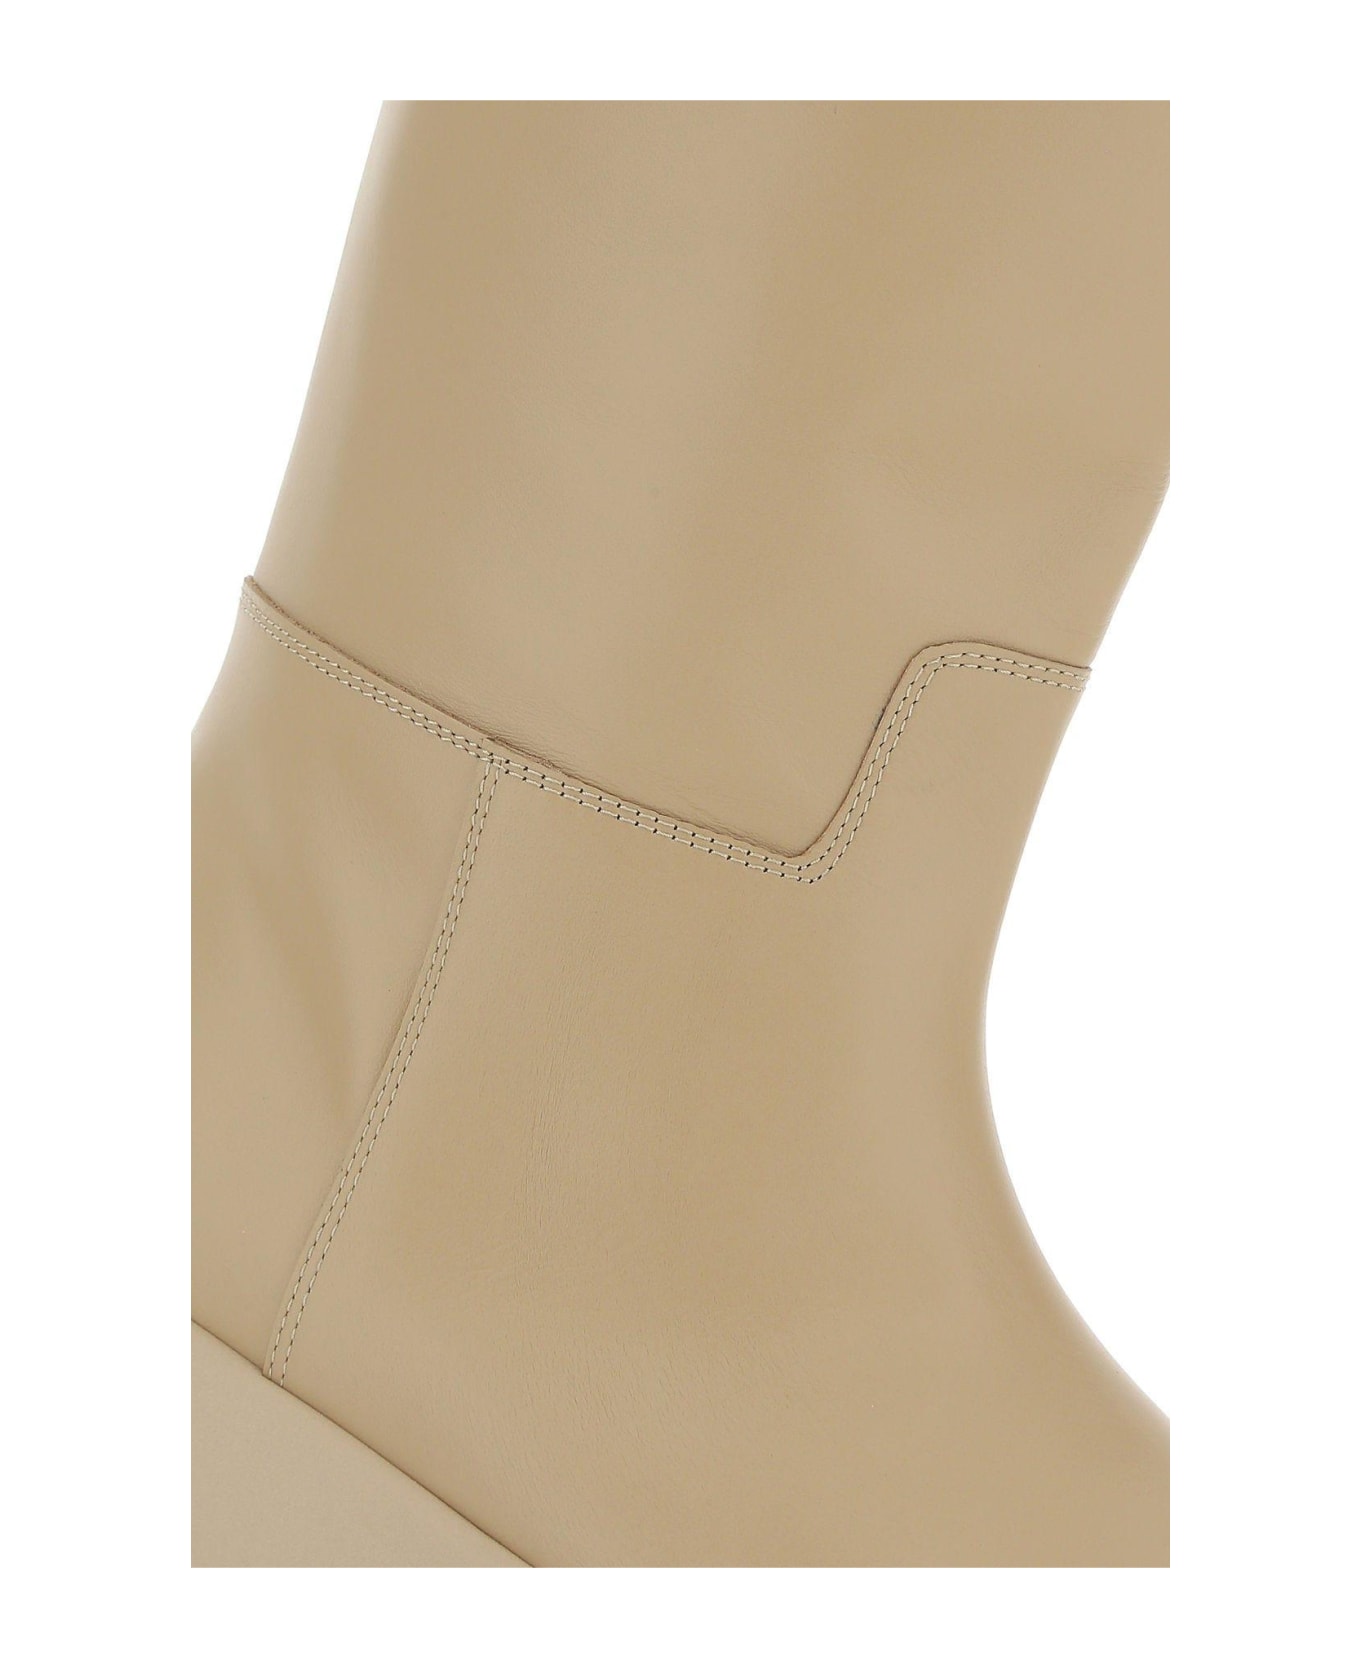 GIA BORGHINI Sand Leather Gia 16 Boots - Beige